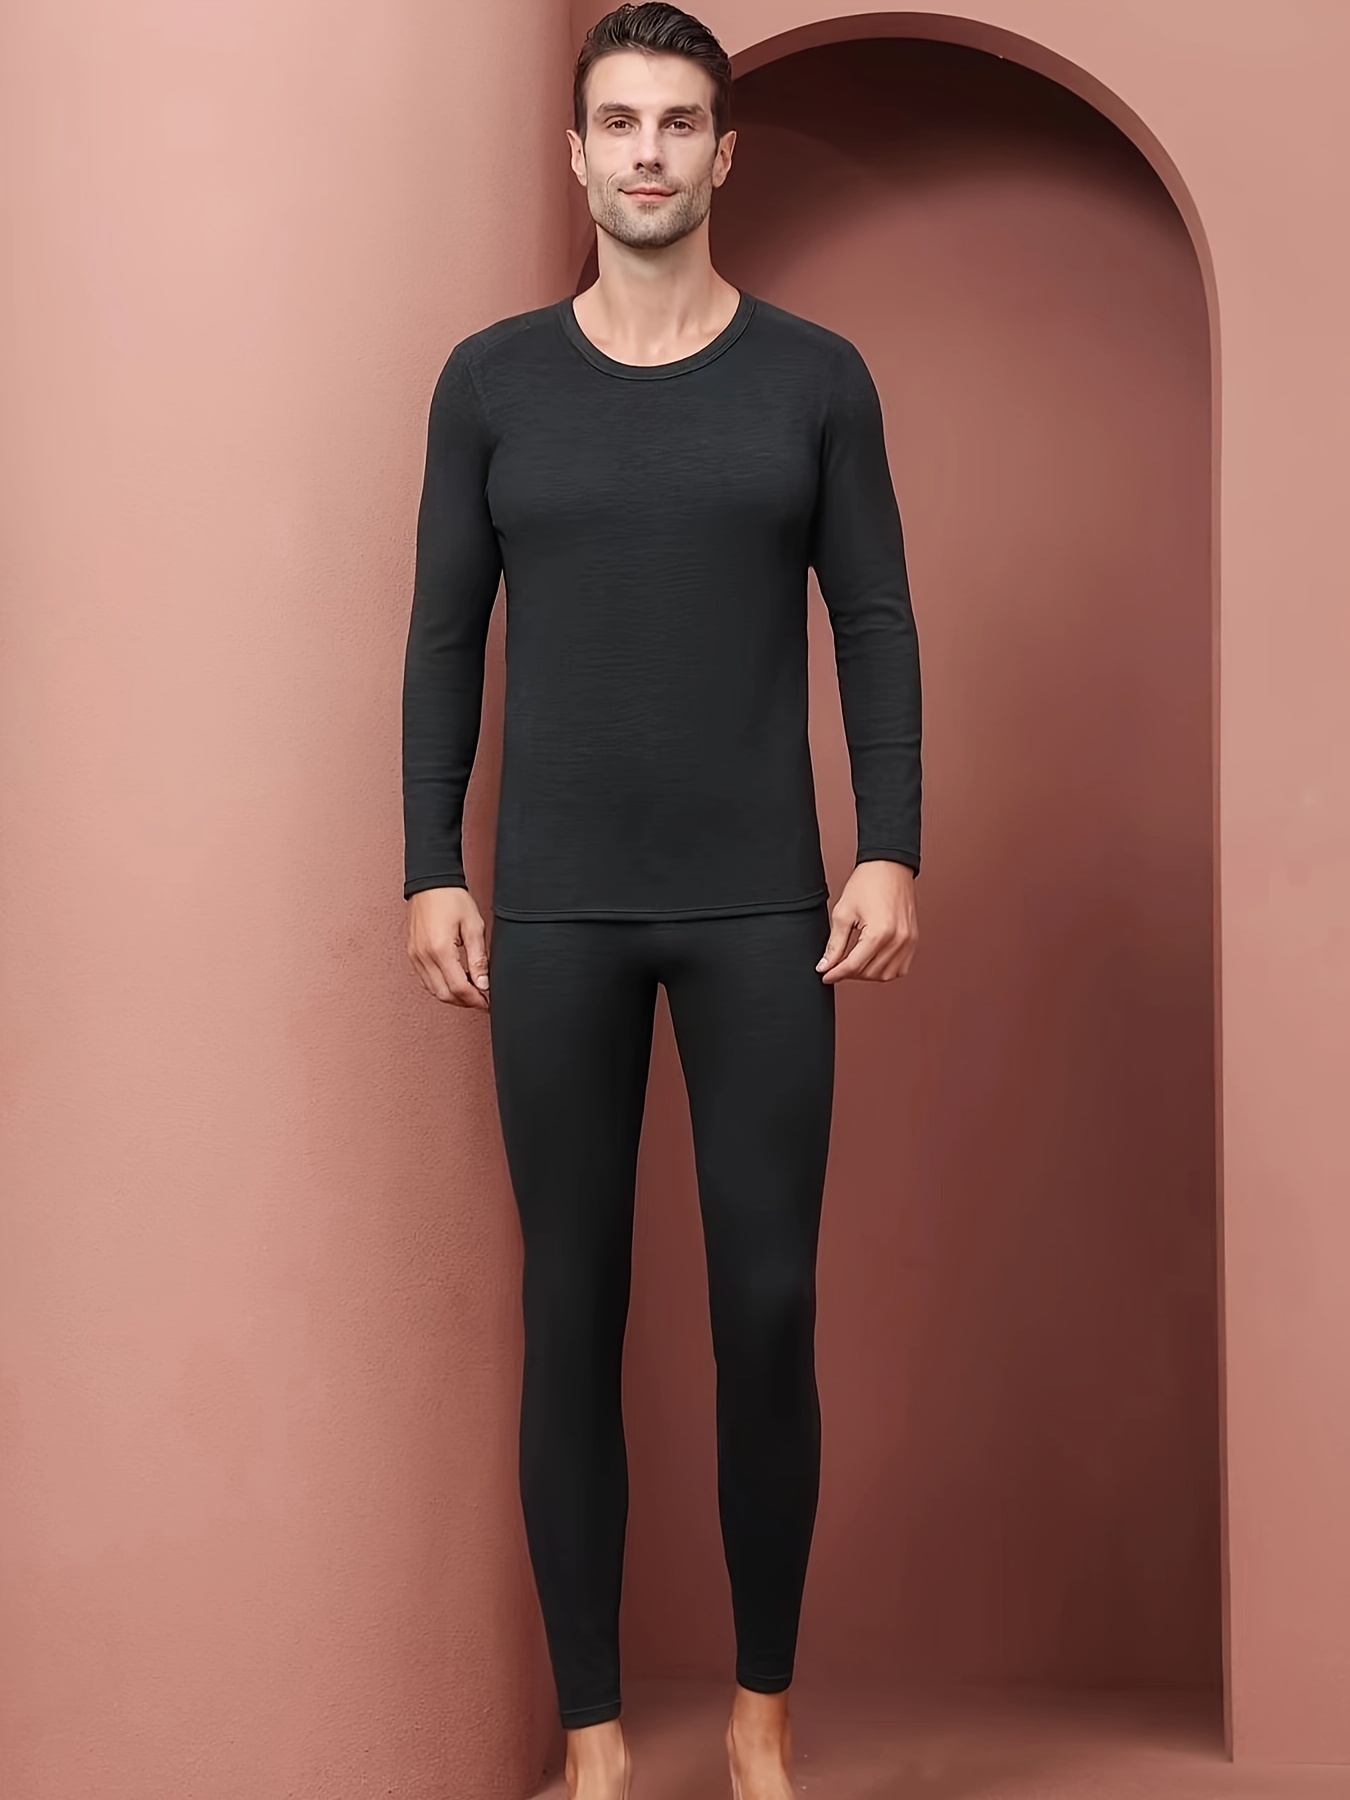 Men's Thermal Underwear Clothing Set Warm Long Johns Pants - Temu